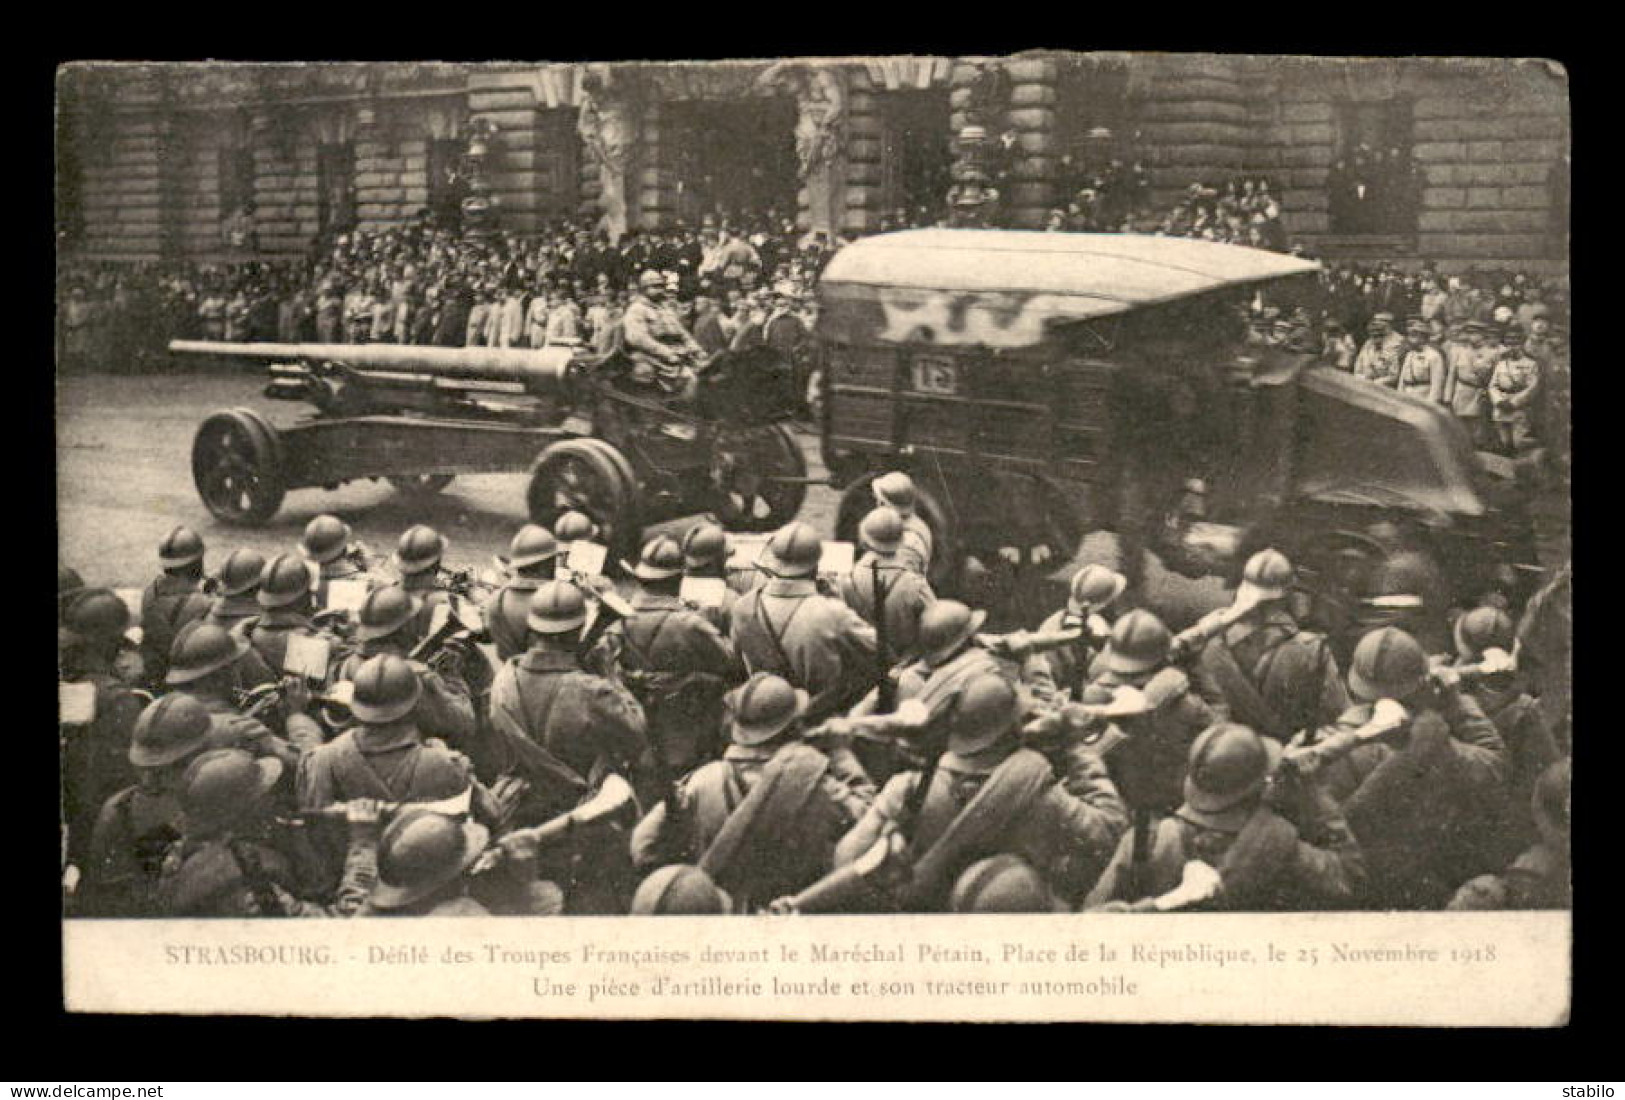 67 - STRASBOURG -  DEFILE DES TROUPES FRANCAISES DEVANT LE MAL PETAIN LE 25 NOVEMBRE 1918 PLACE DE LA REPUBLIQUE - Strasbourg